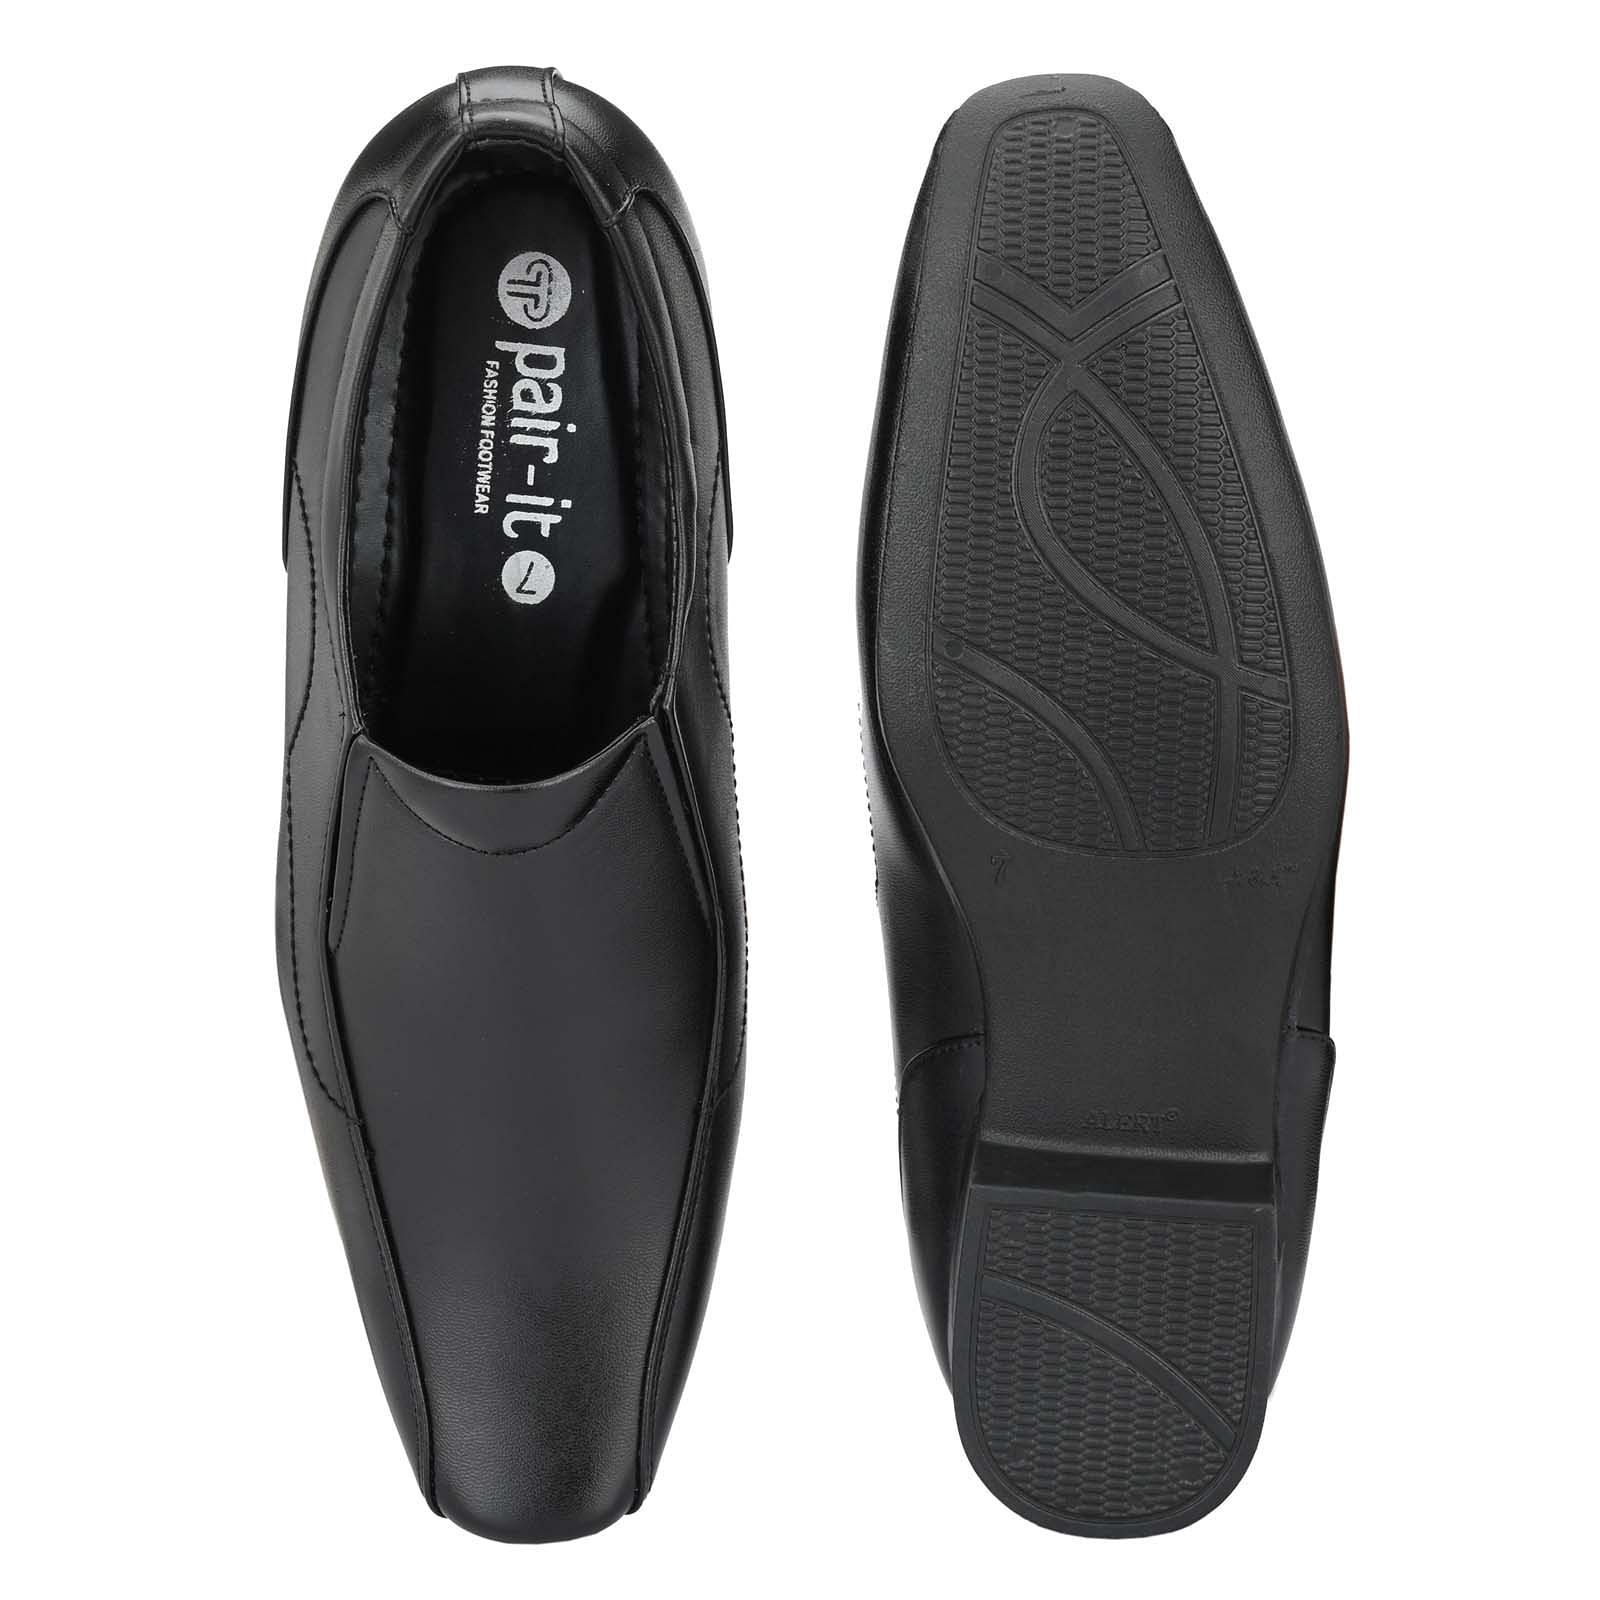 Pair-it Men moccasin Formal Shoes - Black-MN-RYDER201